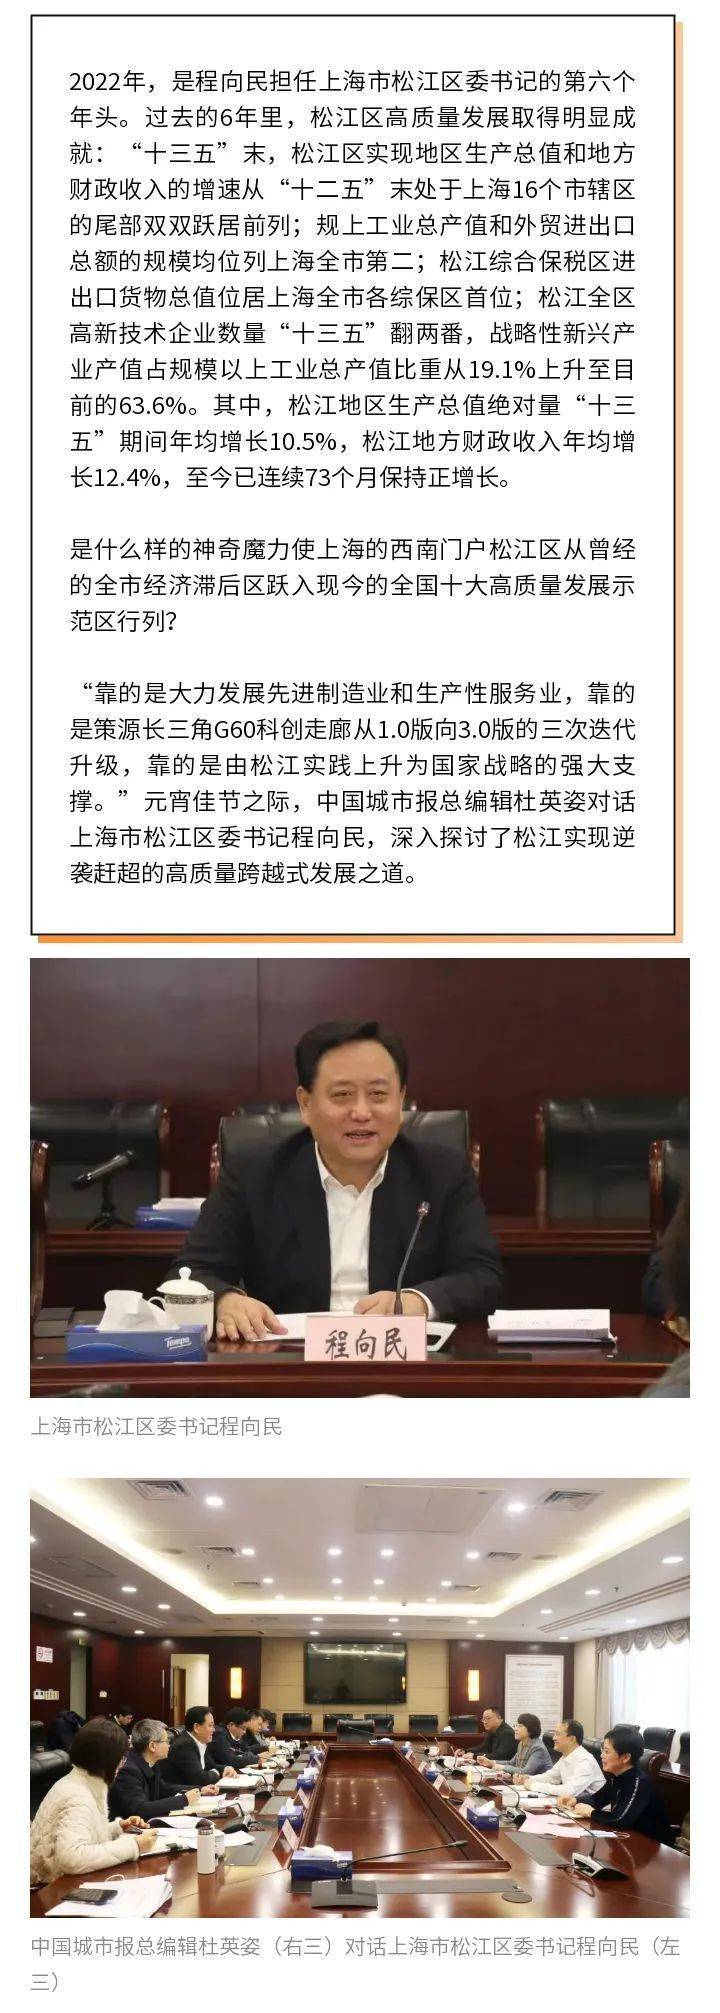 中国城市报总编辑杜英姿对话上海市松江区委书记程向民领舞长三角g60